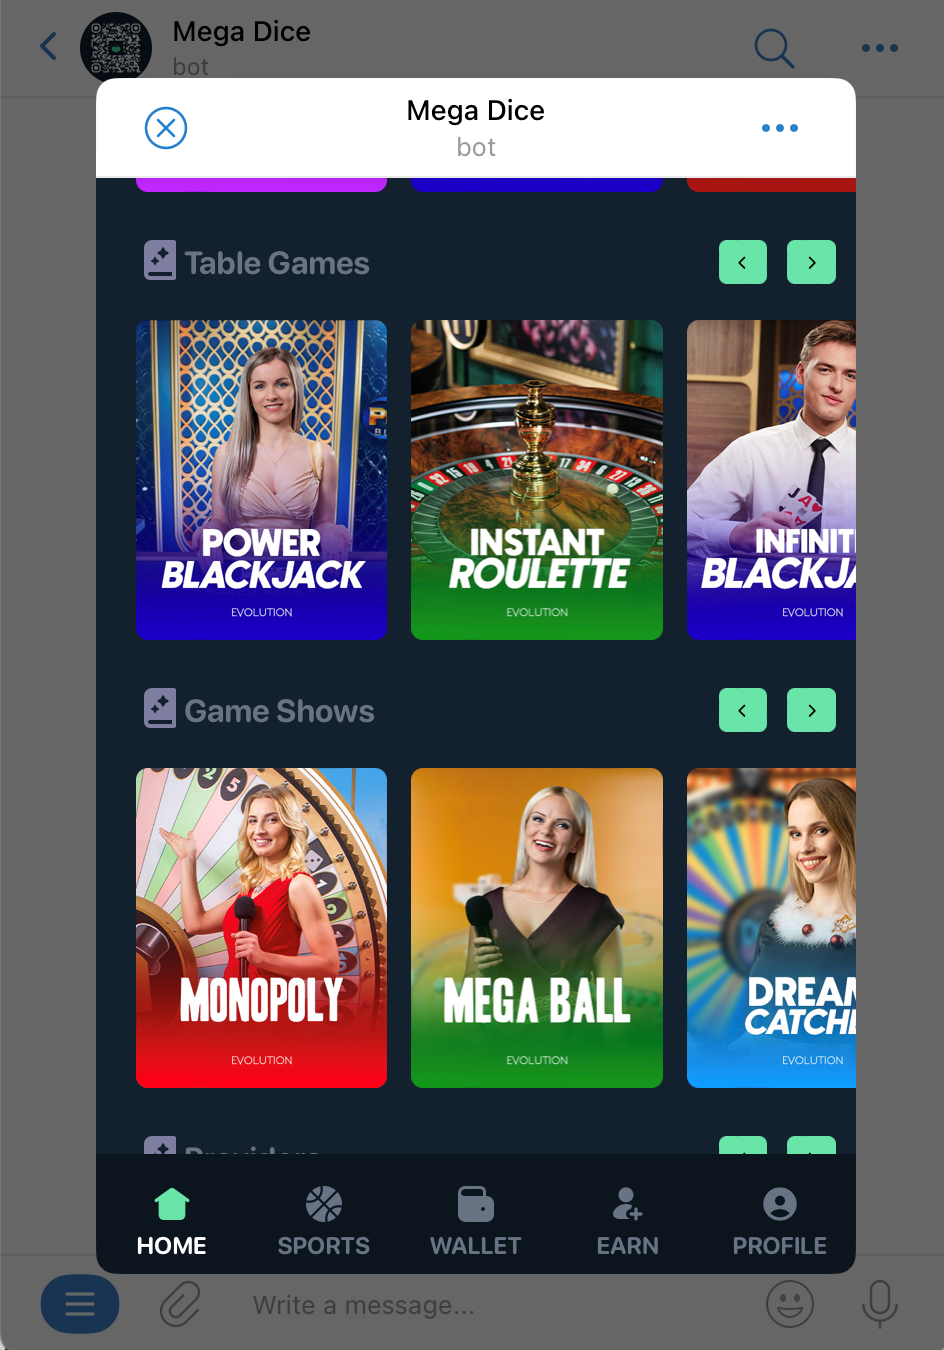 Mega Dice casino on Telegram | DeviceDaily.com